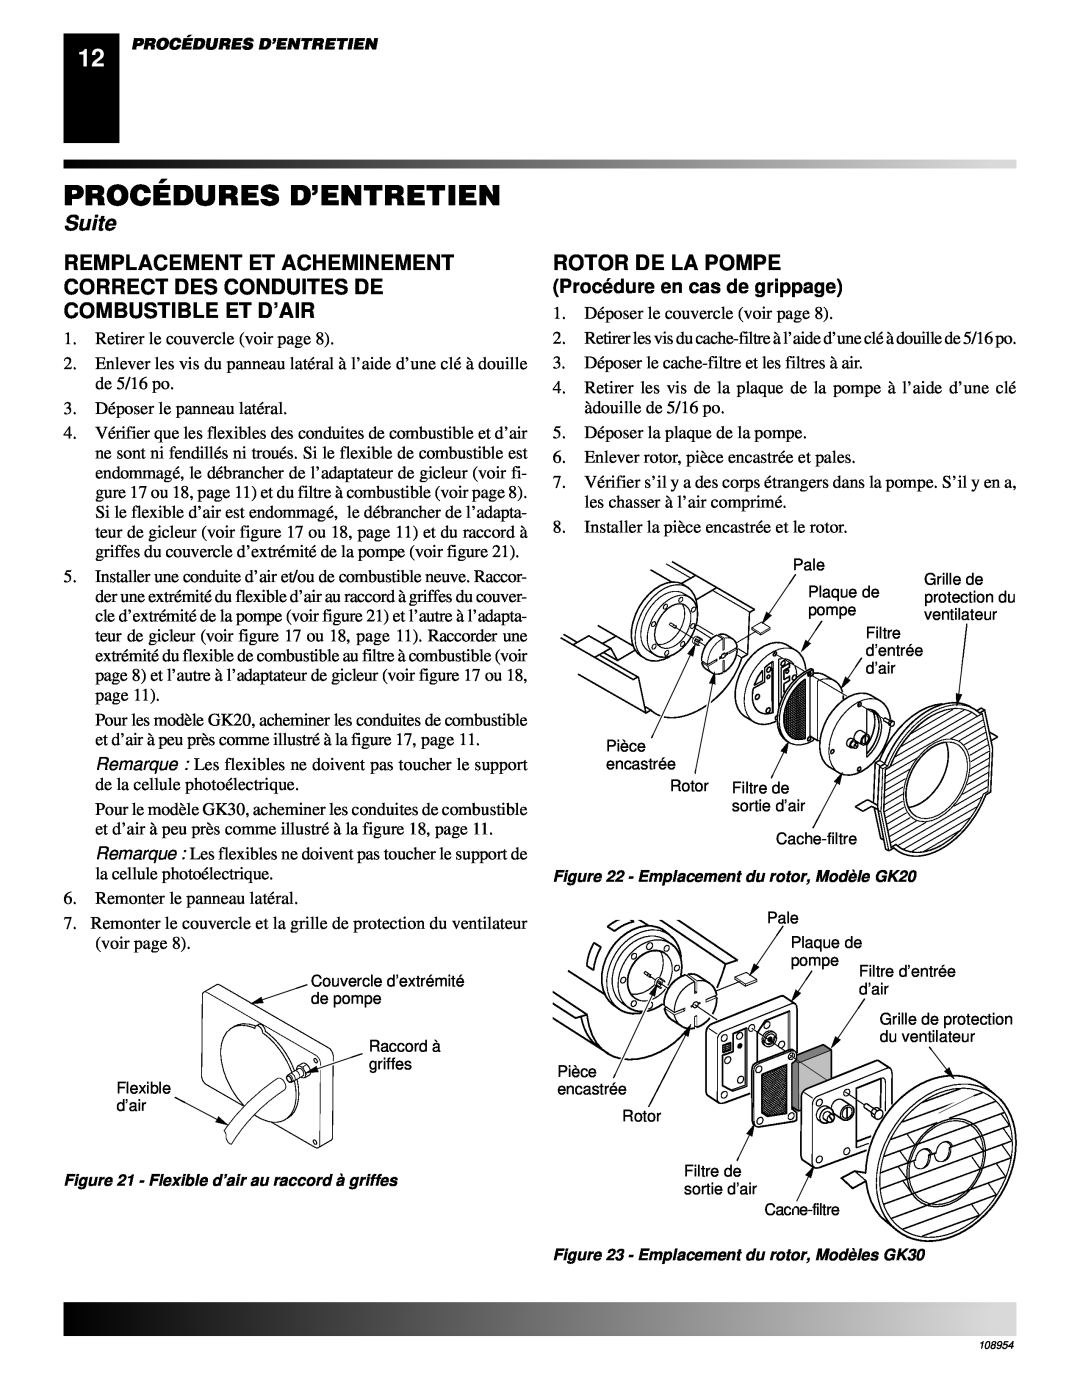 Desa GK20, GK30 owner manual Rotor De La Pompe, Procé dure en cas de grippage, Procédures D’Entretien, Suite 